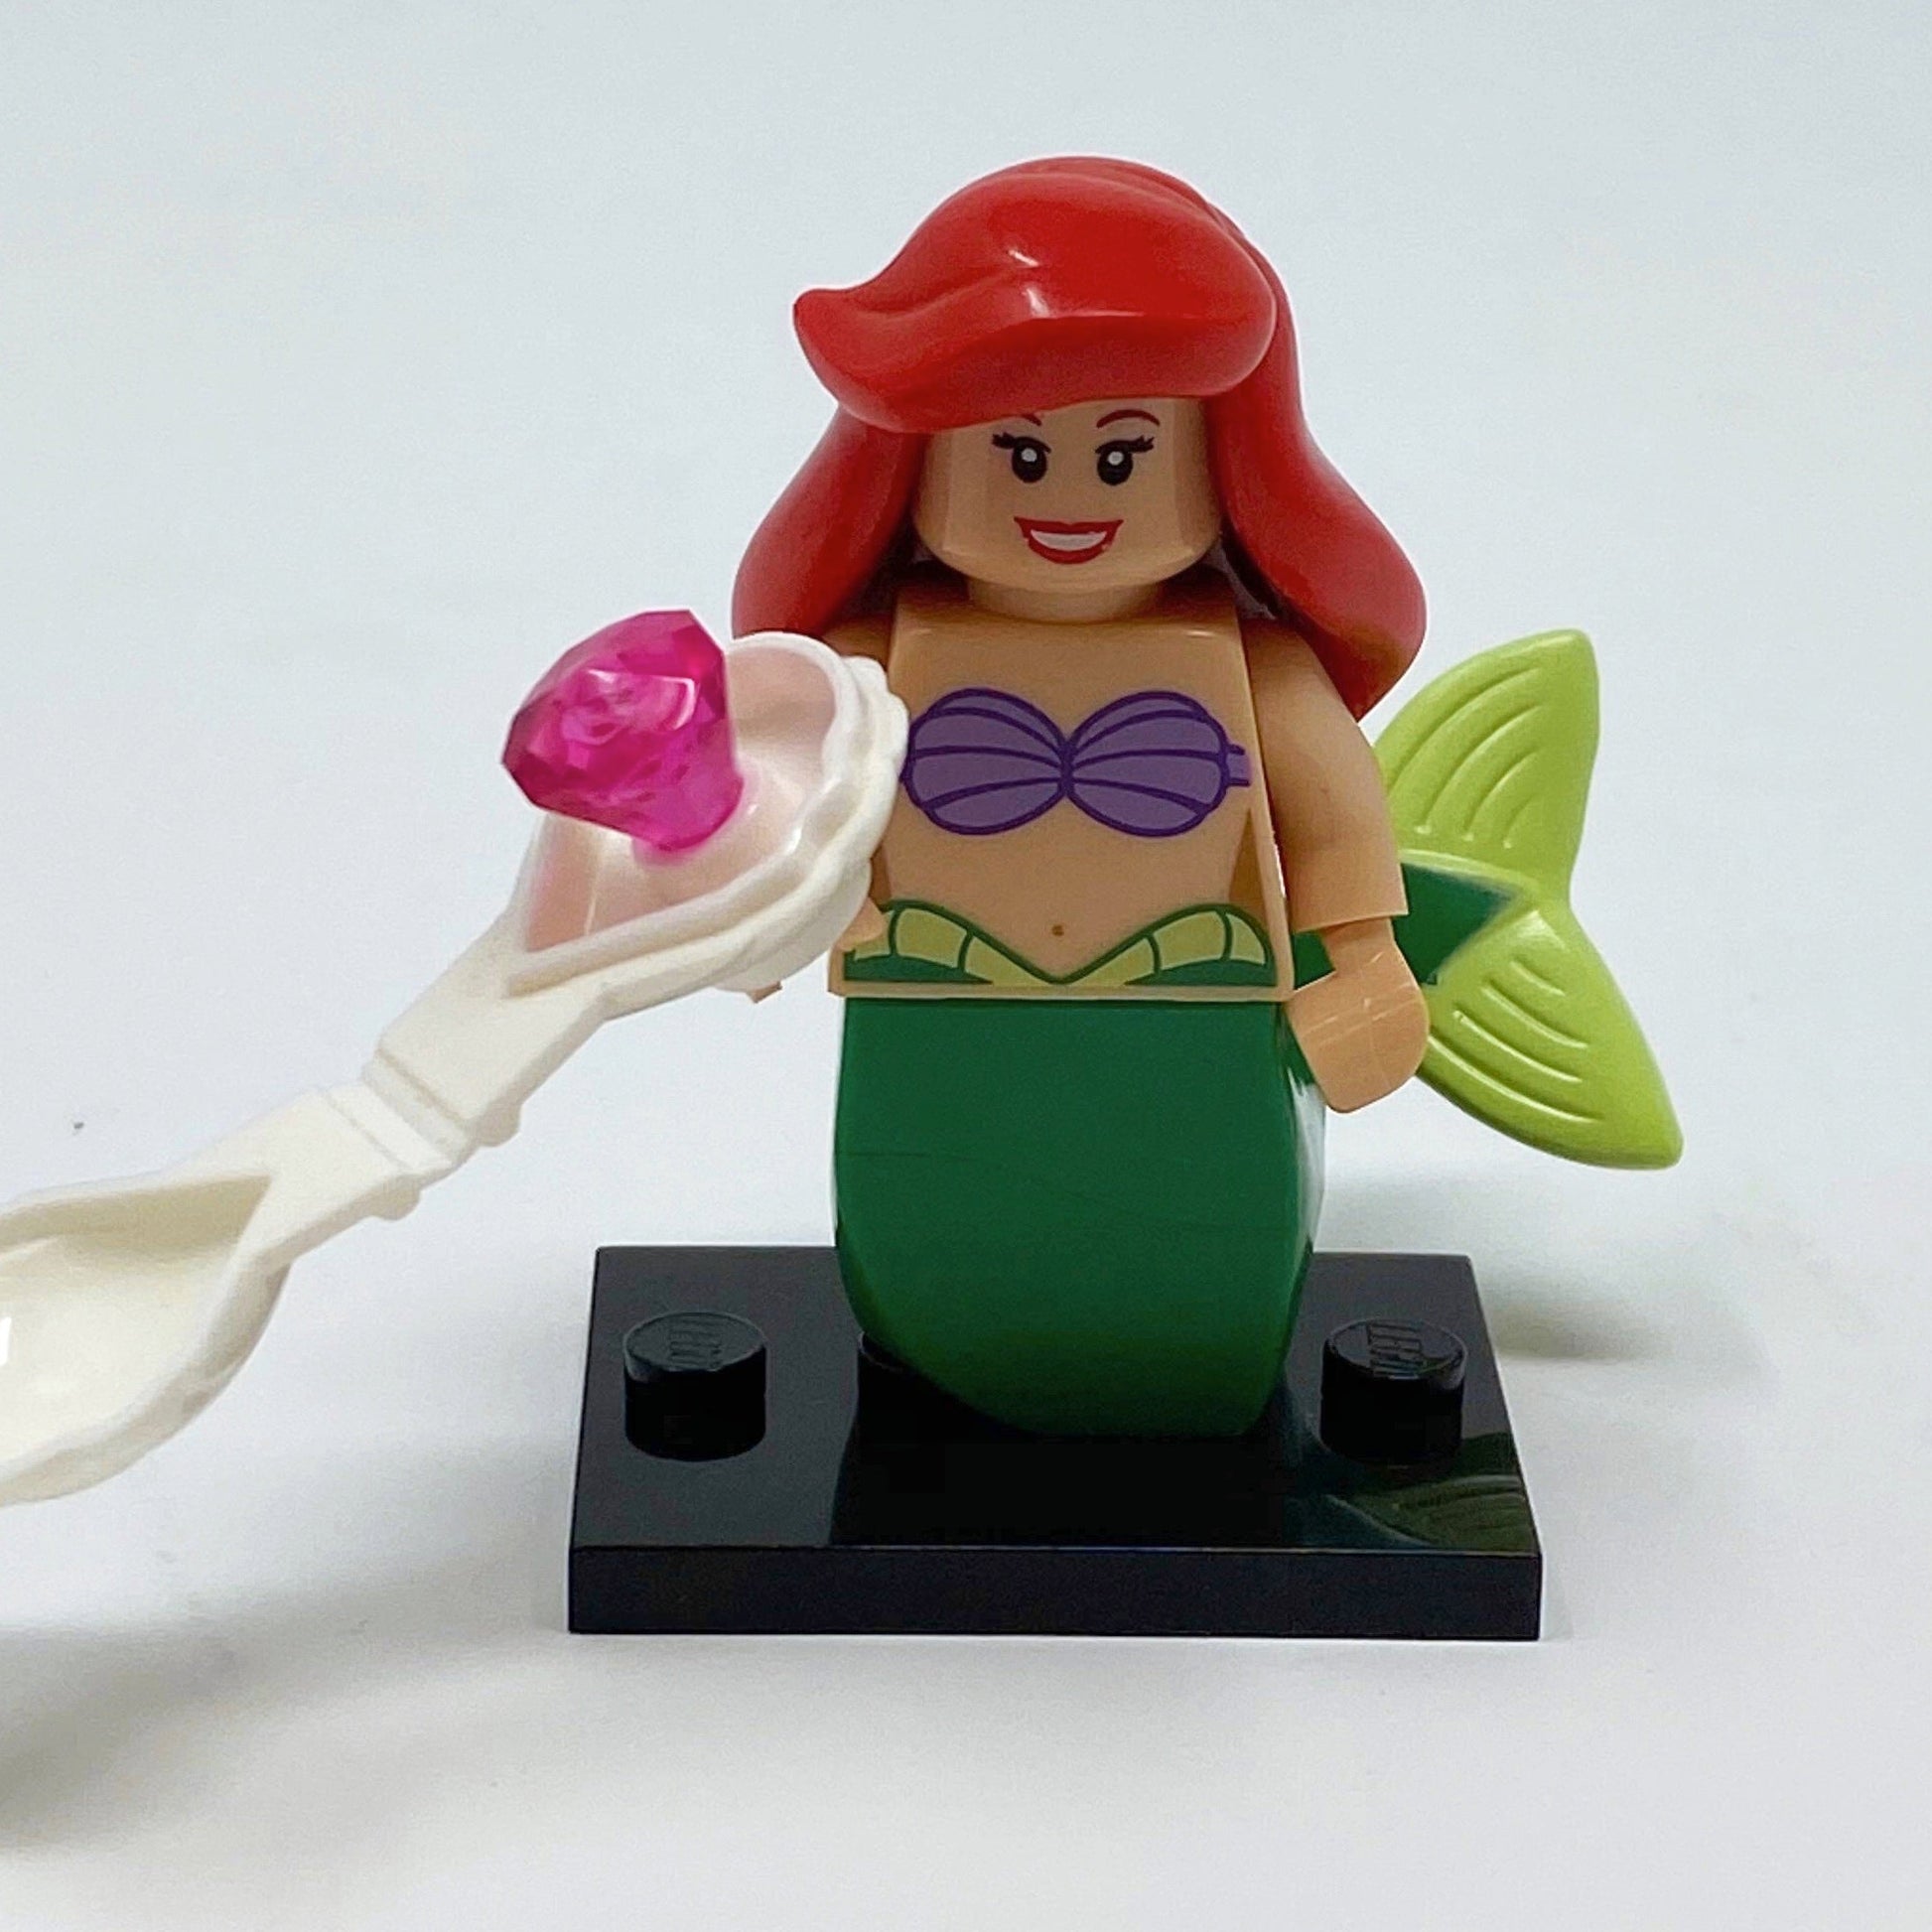 LEGO Ariel Minifigure, Ariel Lego Figure